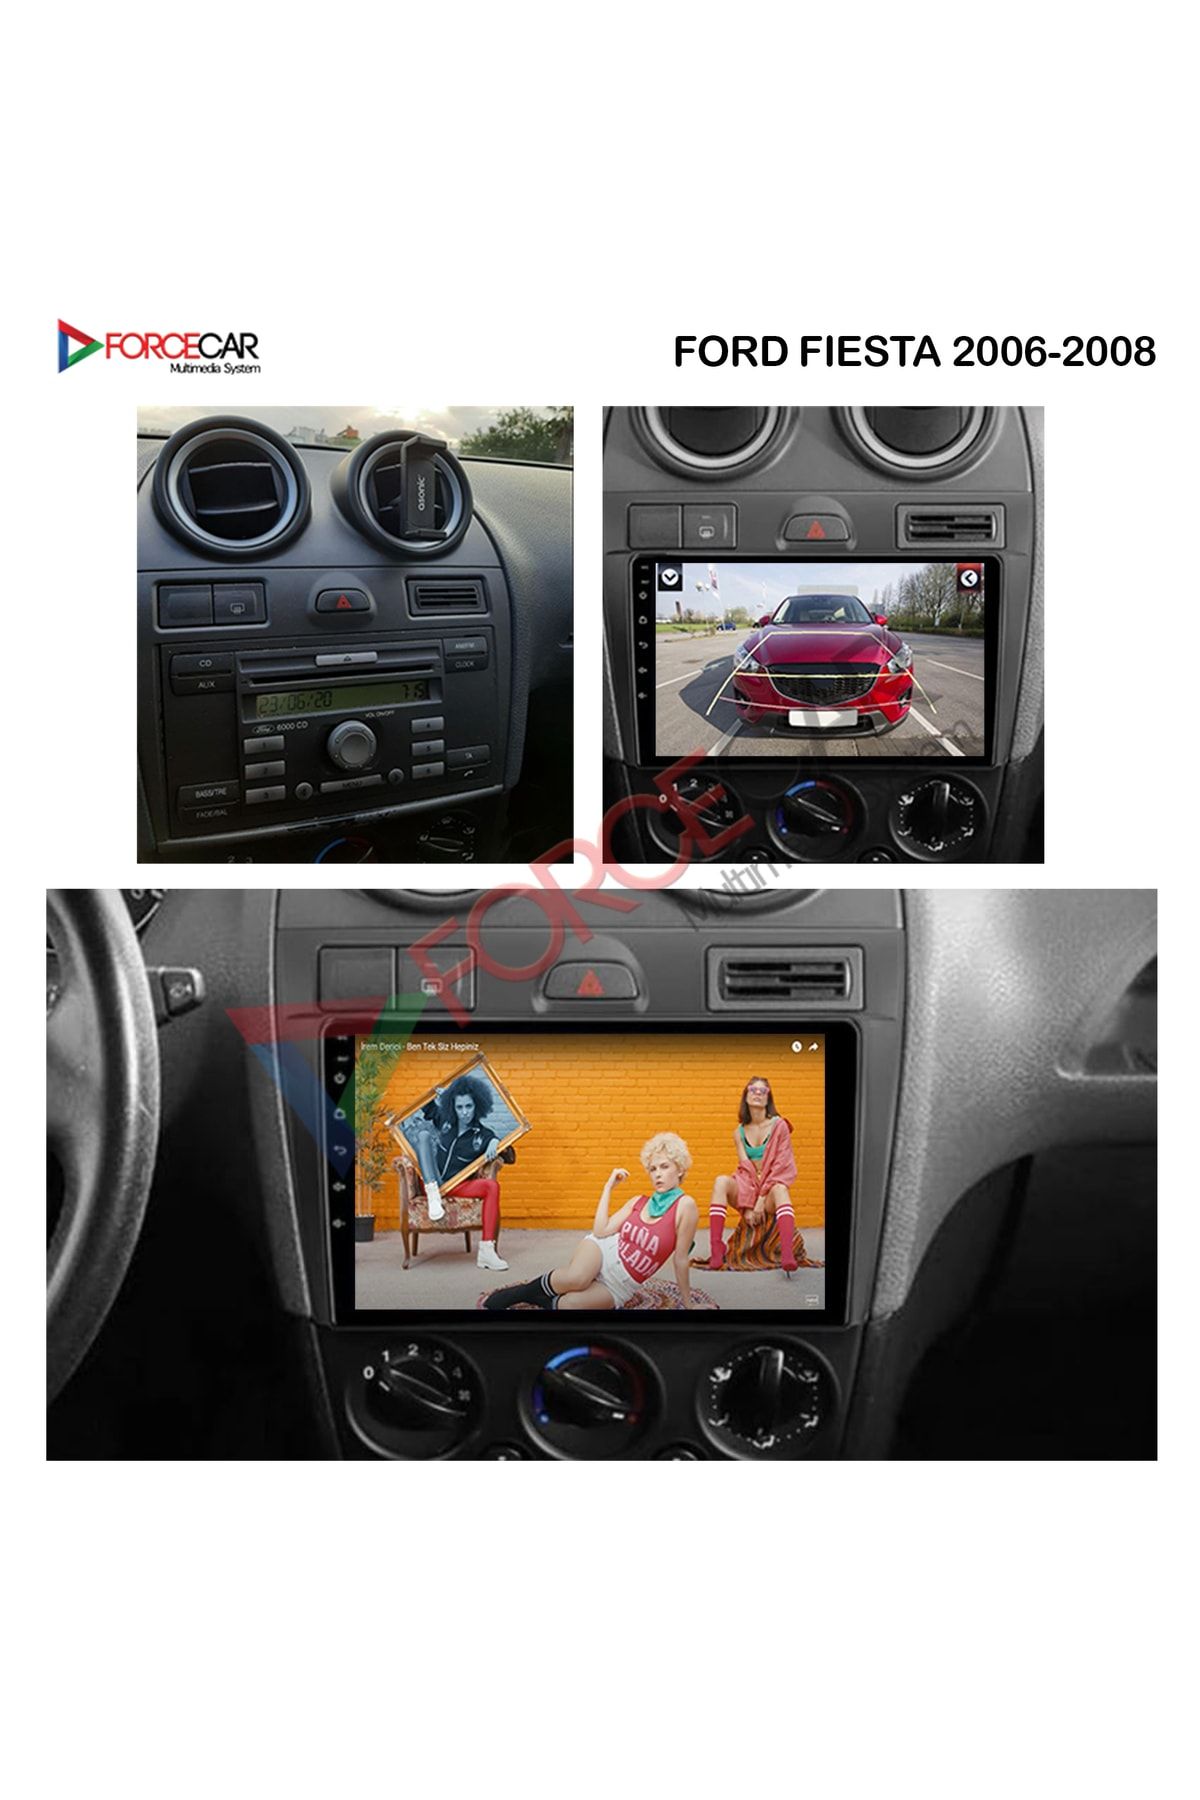 FORCECAR Ford Fiesta 2006_2008   Uyumlu Android Multimedya 2_32 Kablosuz Carplay